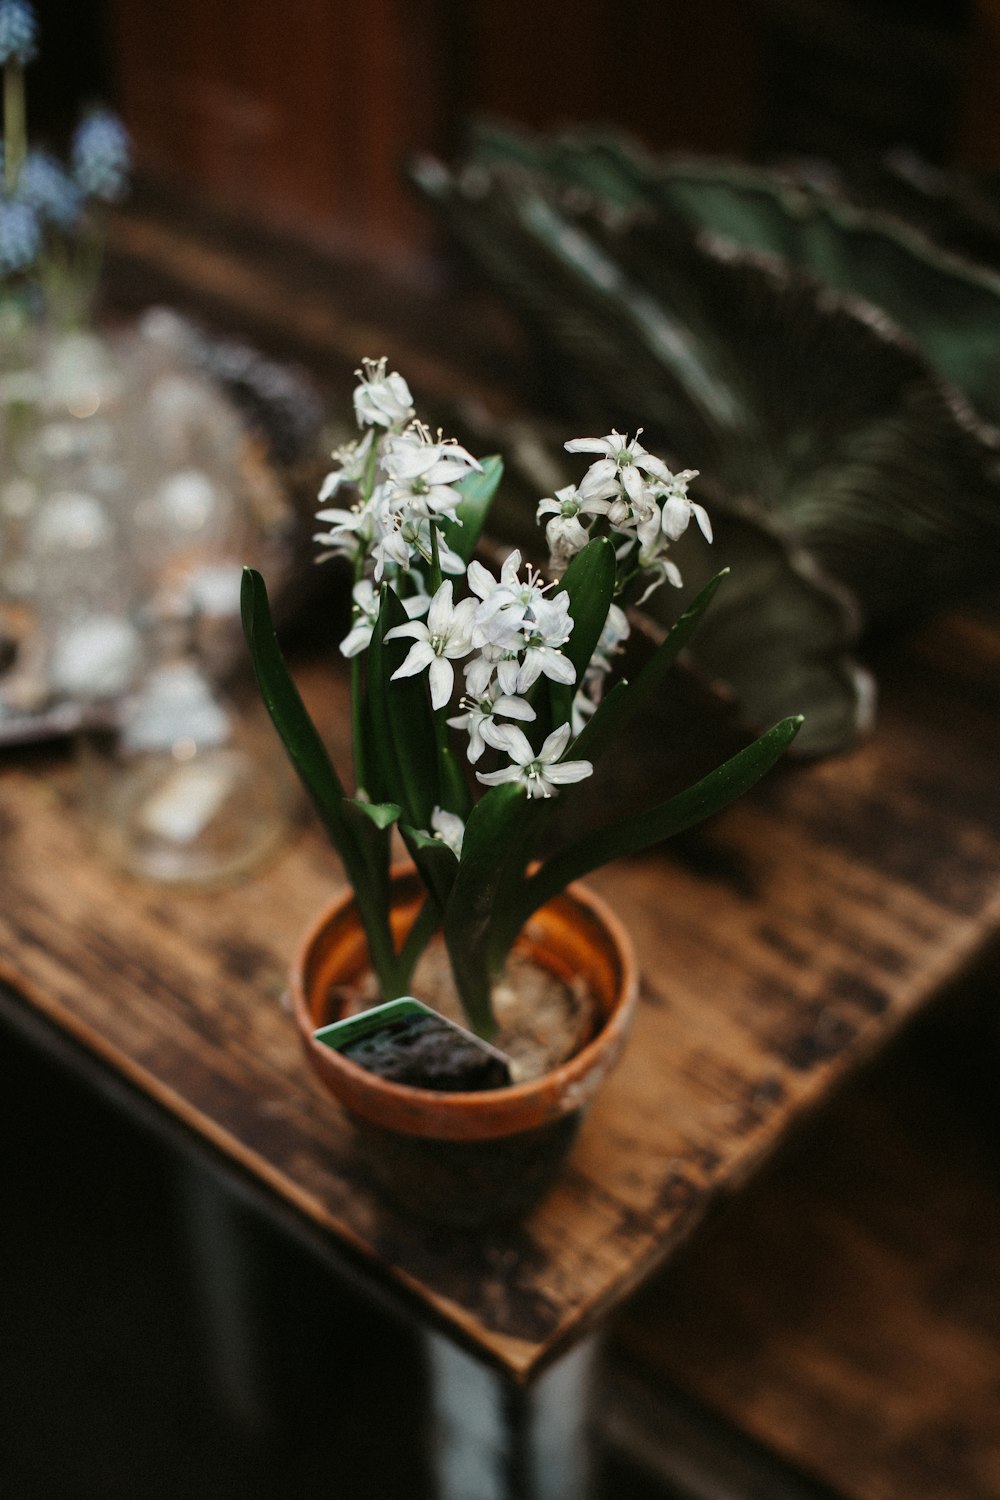 flores brancas na mesa de madeira marrom